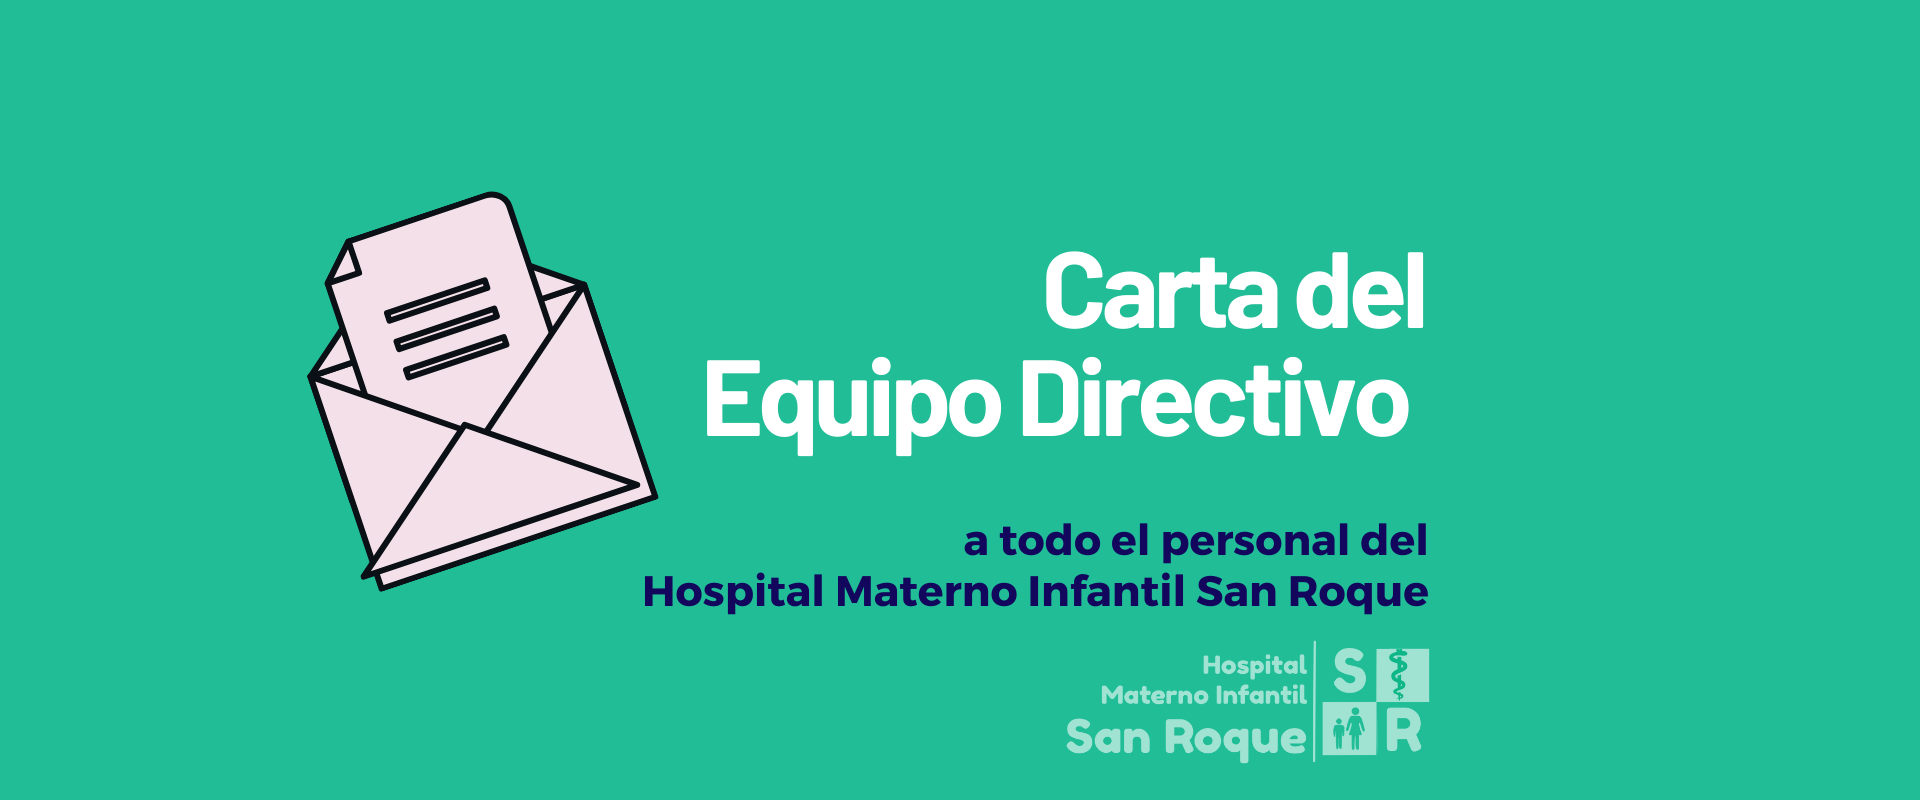 Carta del Equipo Directivo al Personal del Hospital Materno Infantil San Roque